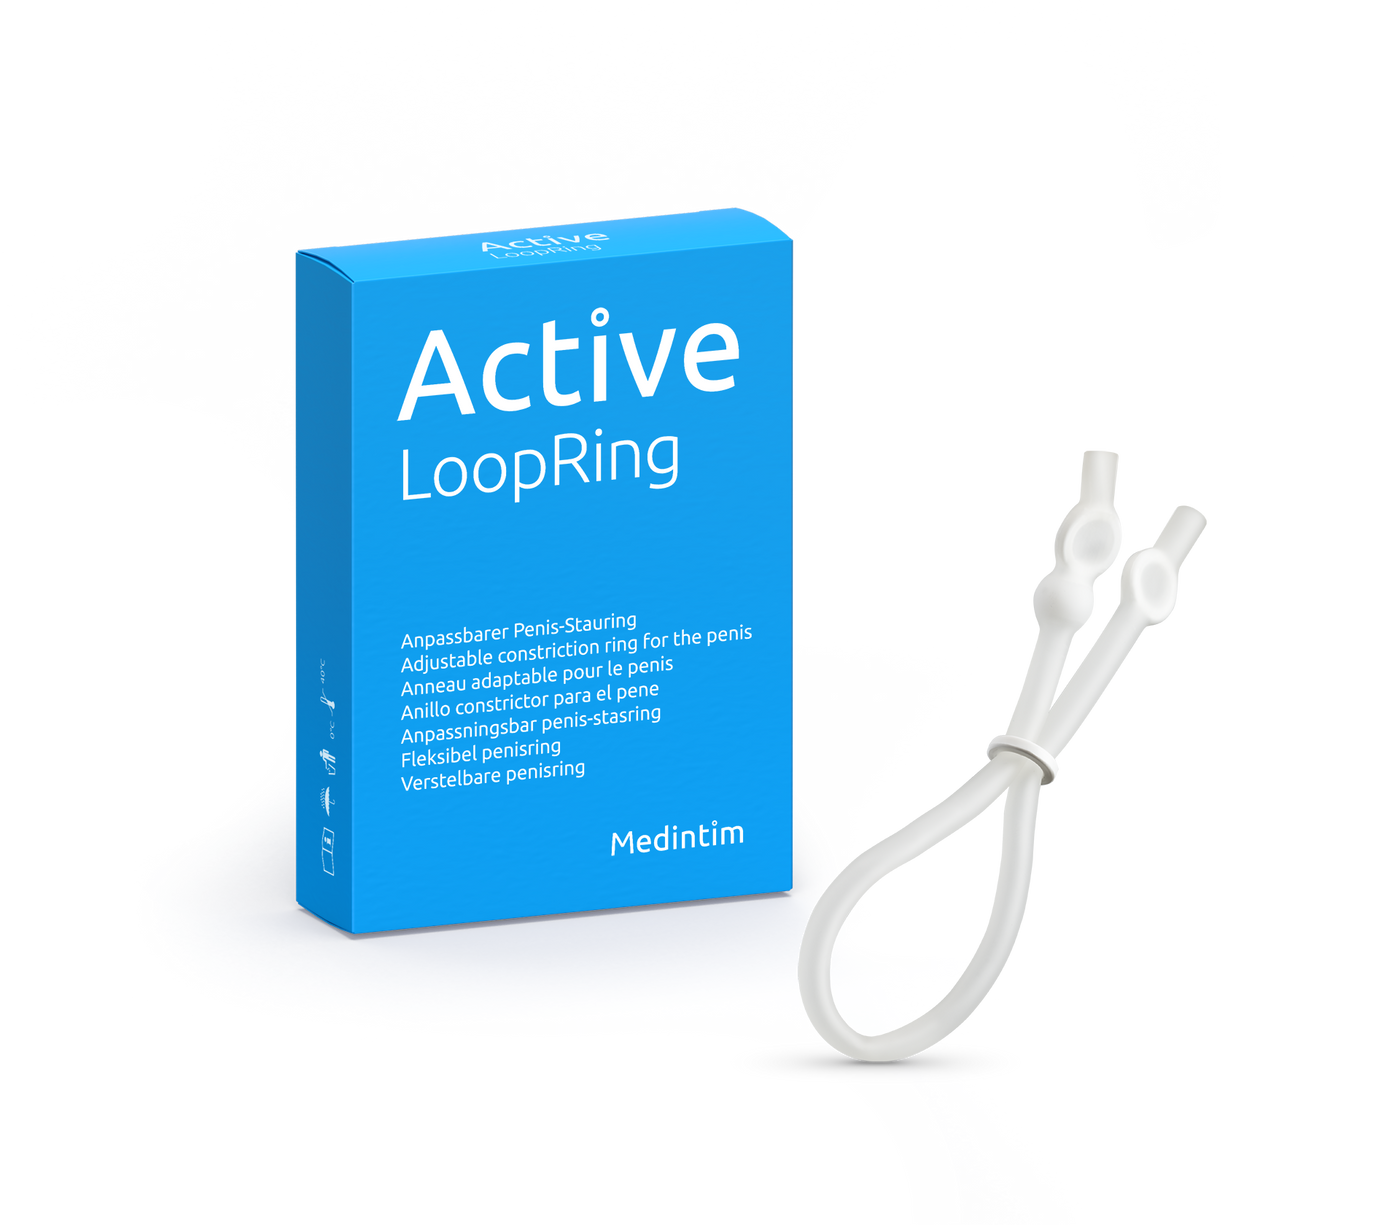 ACTIVE LoopRing (ALR)